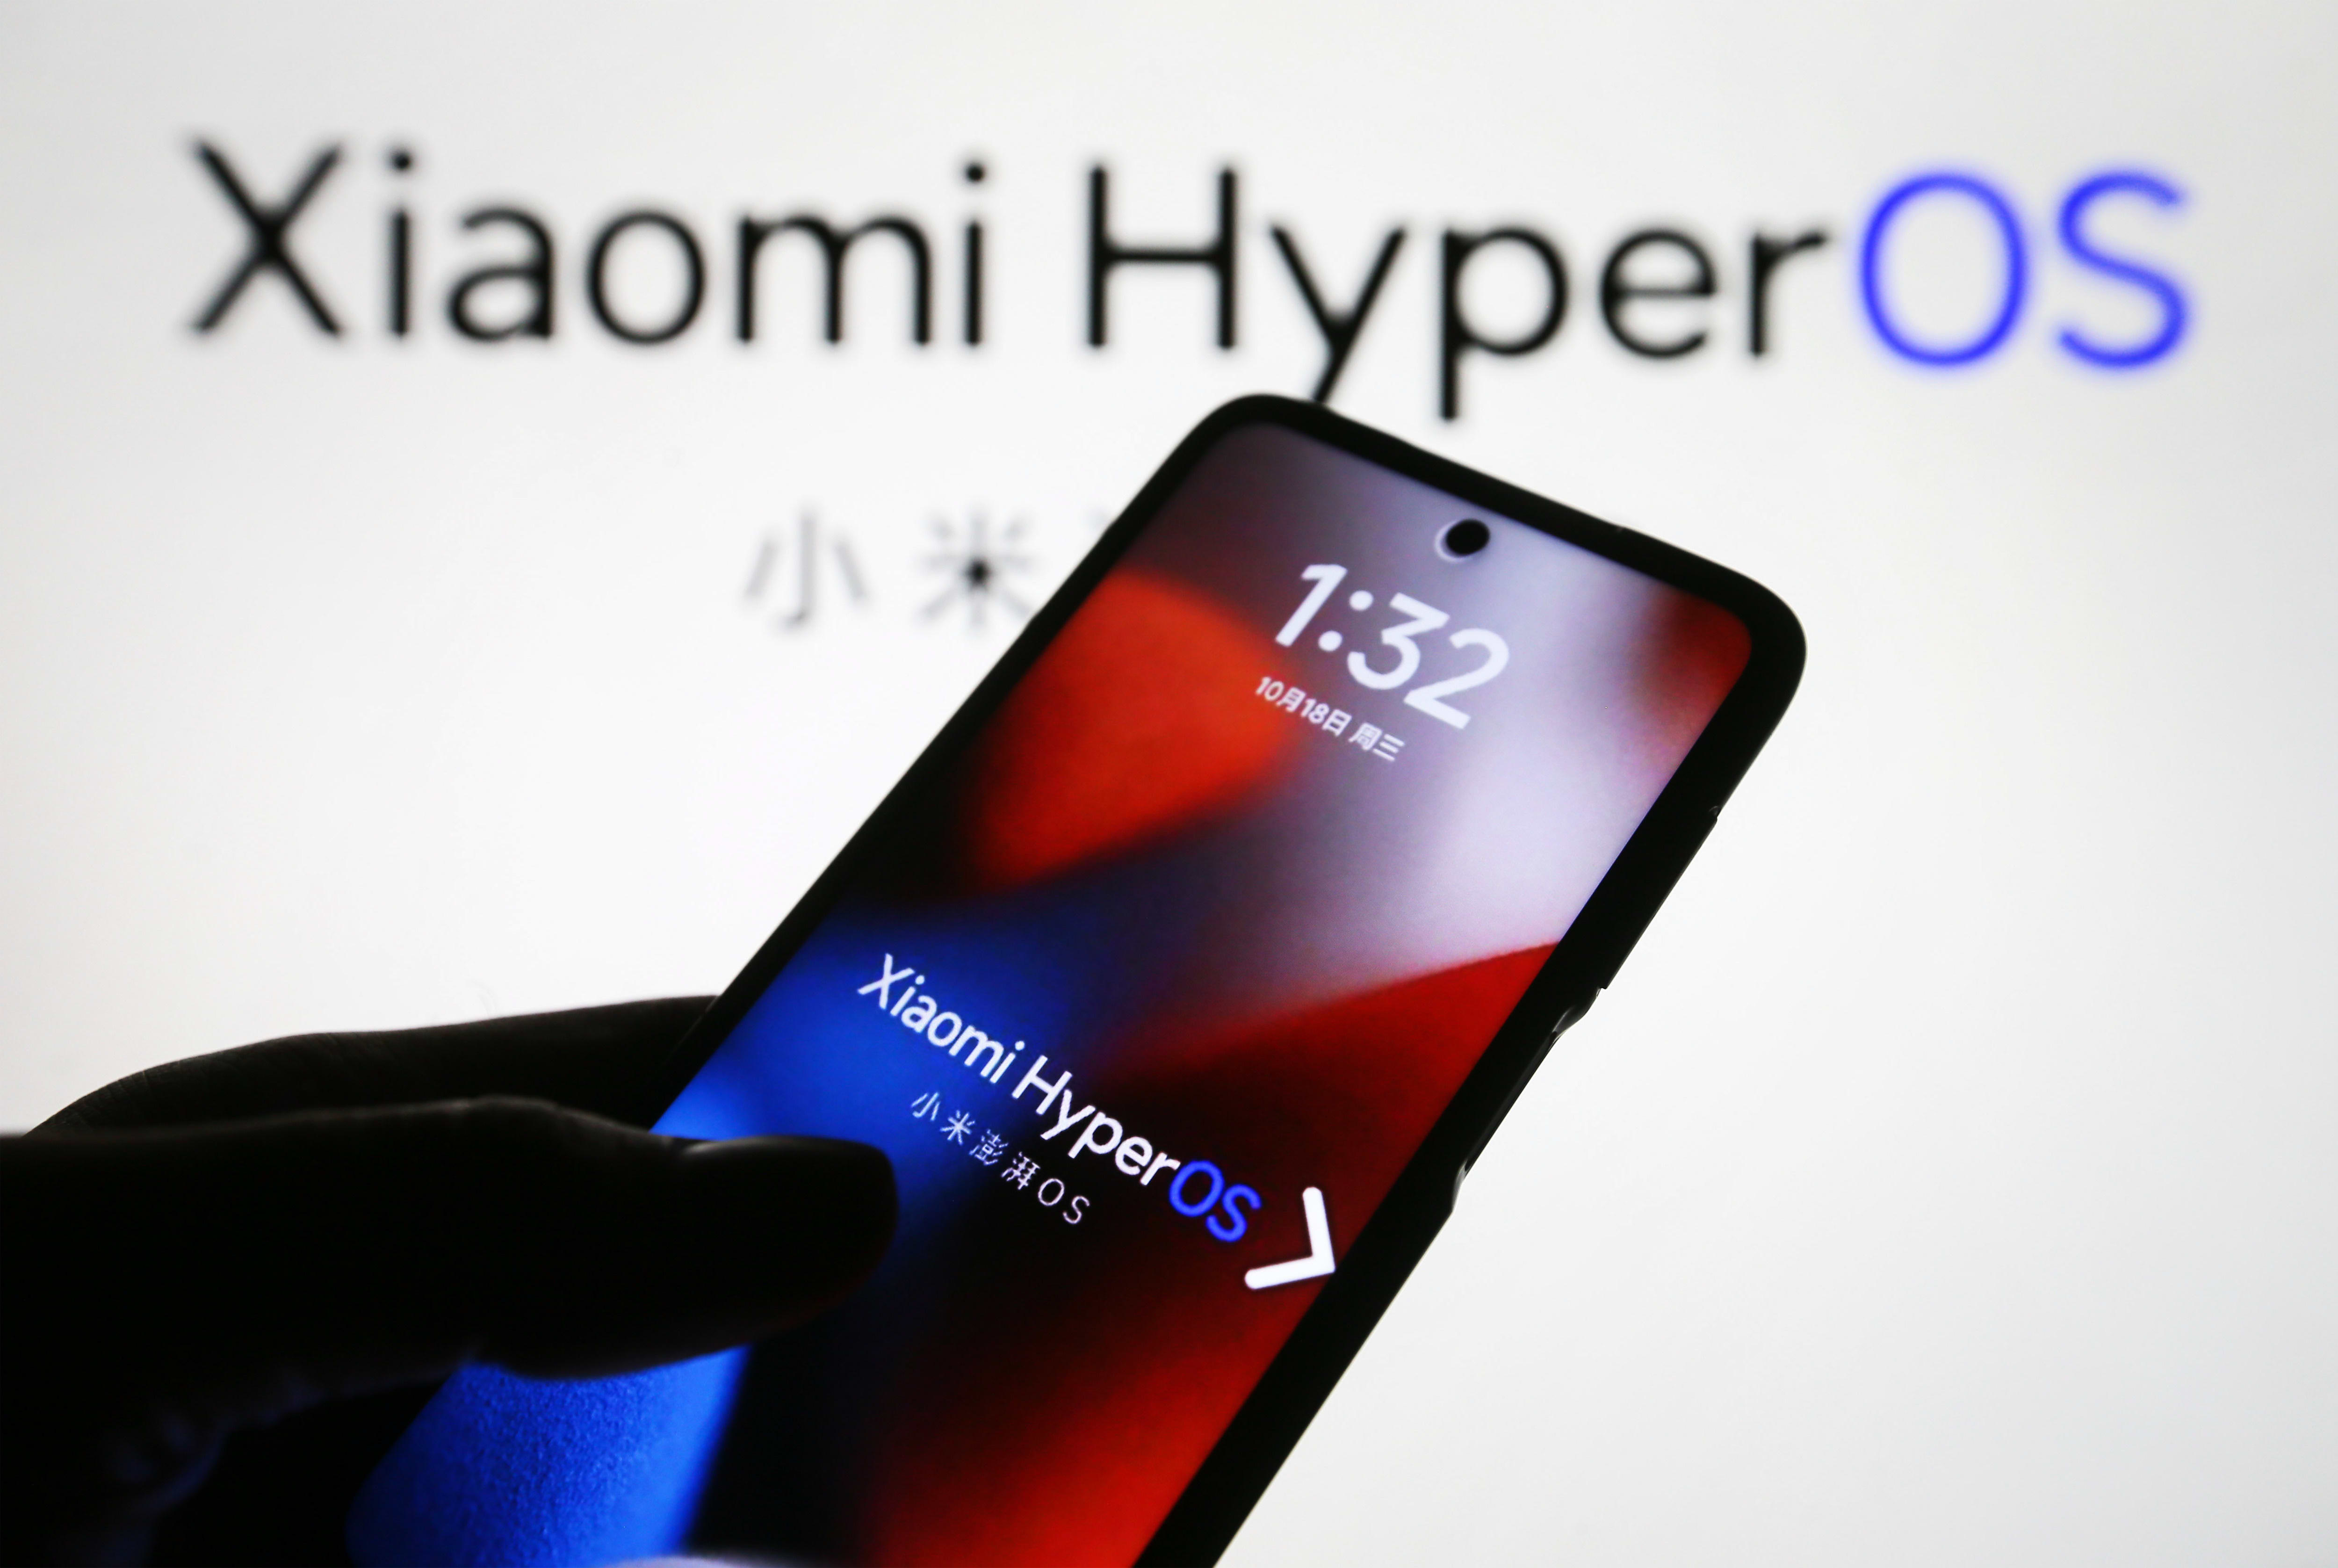 Çinli akıllı telefon şirketi Xiaomi, arabayı planlarken HyperOS’u piyasaya sürdü